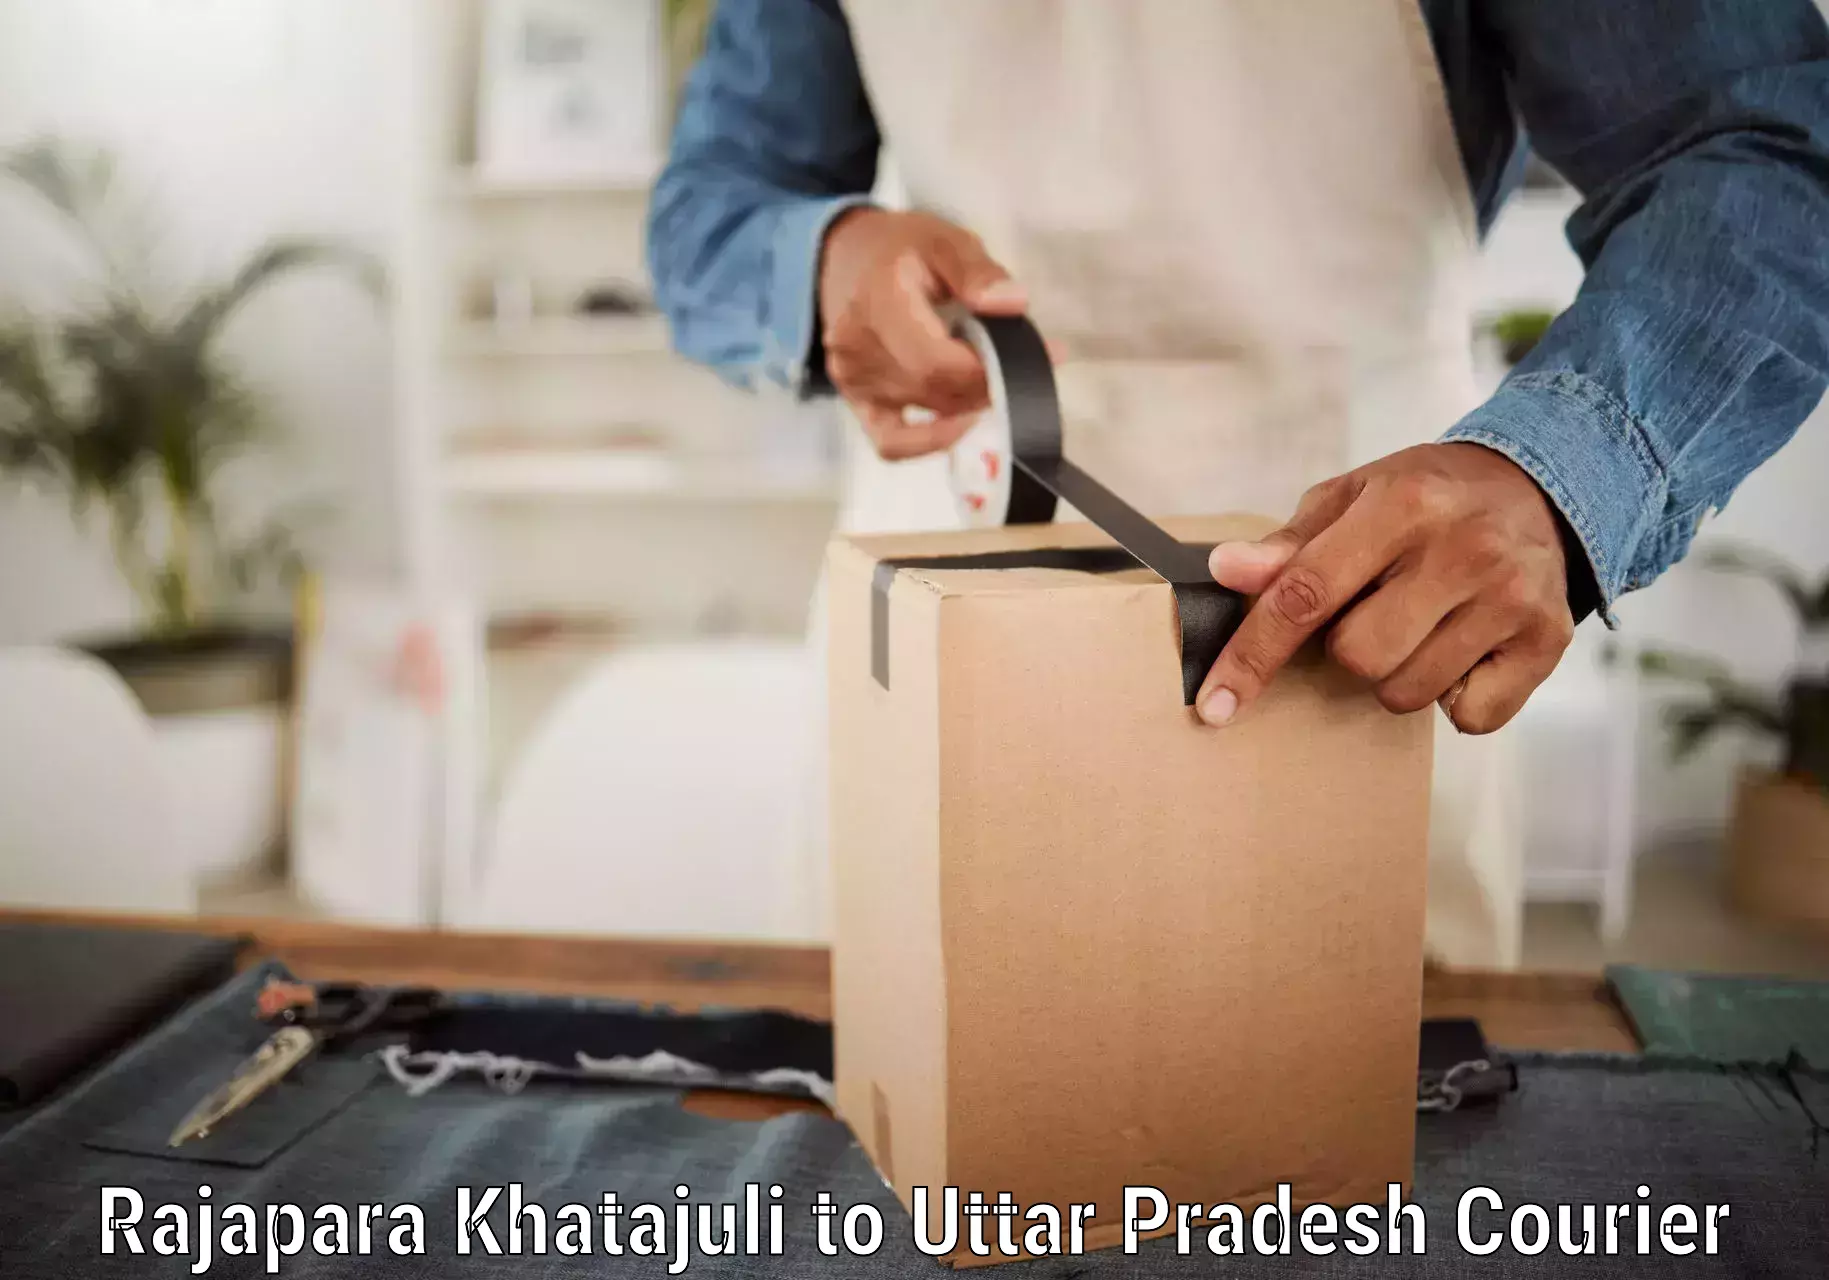 Premium courier solutions Rajapara Khatajuli to Rath